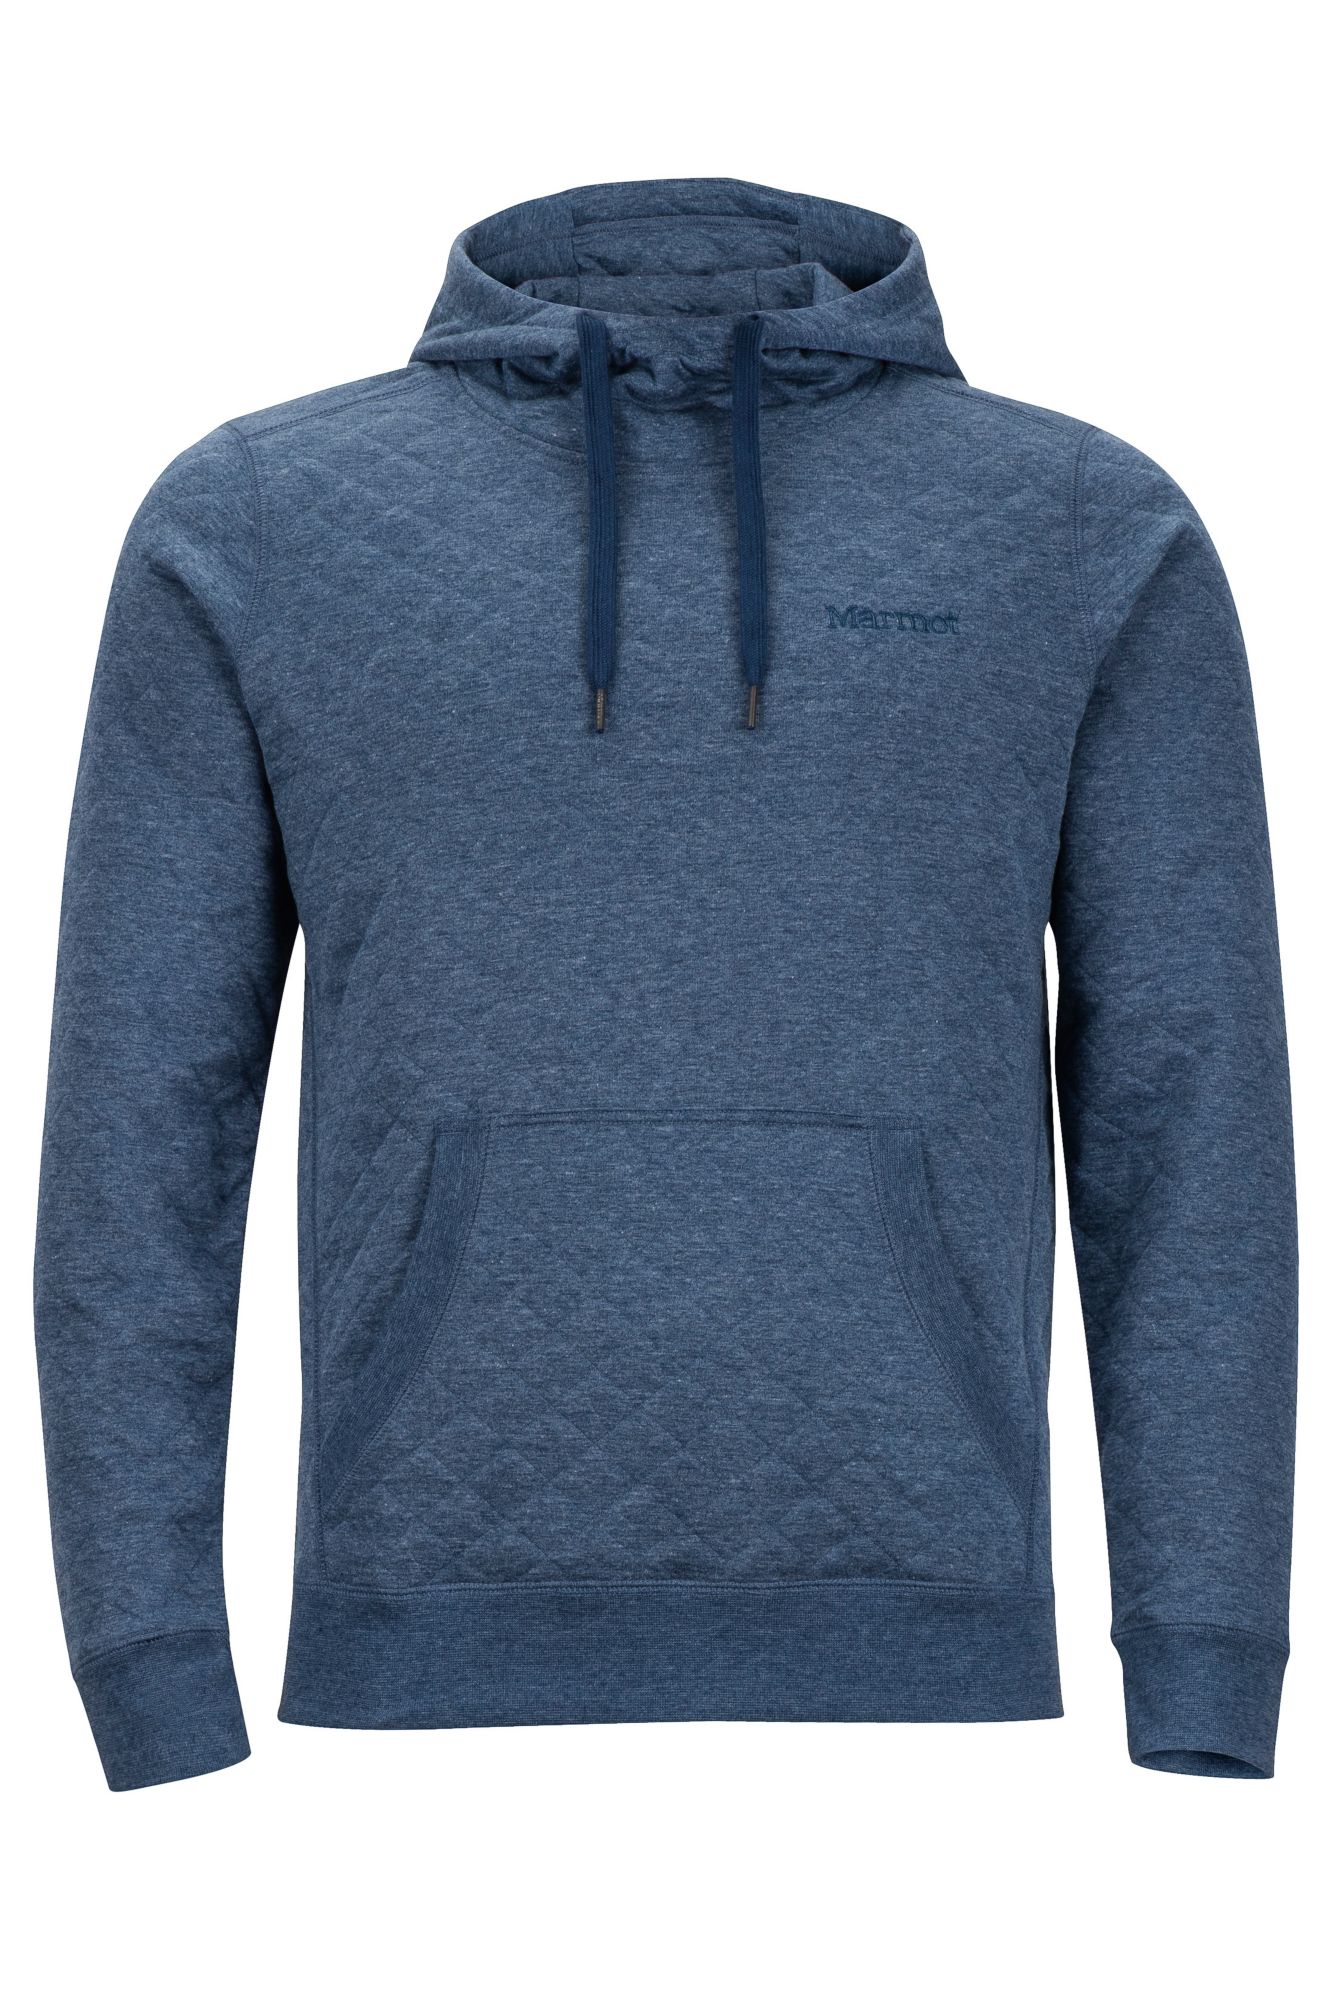 ebay north face hoodie